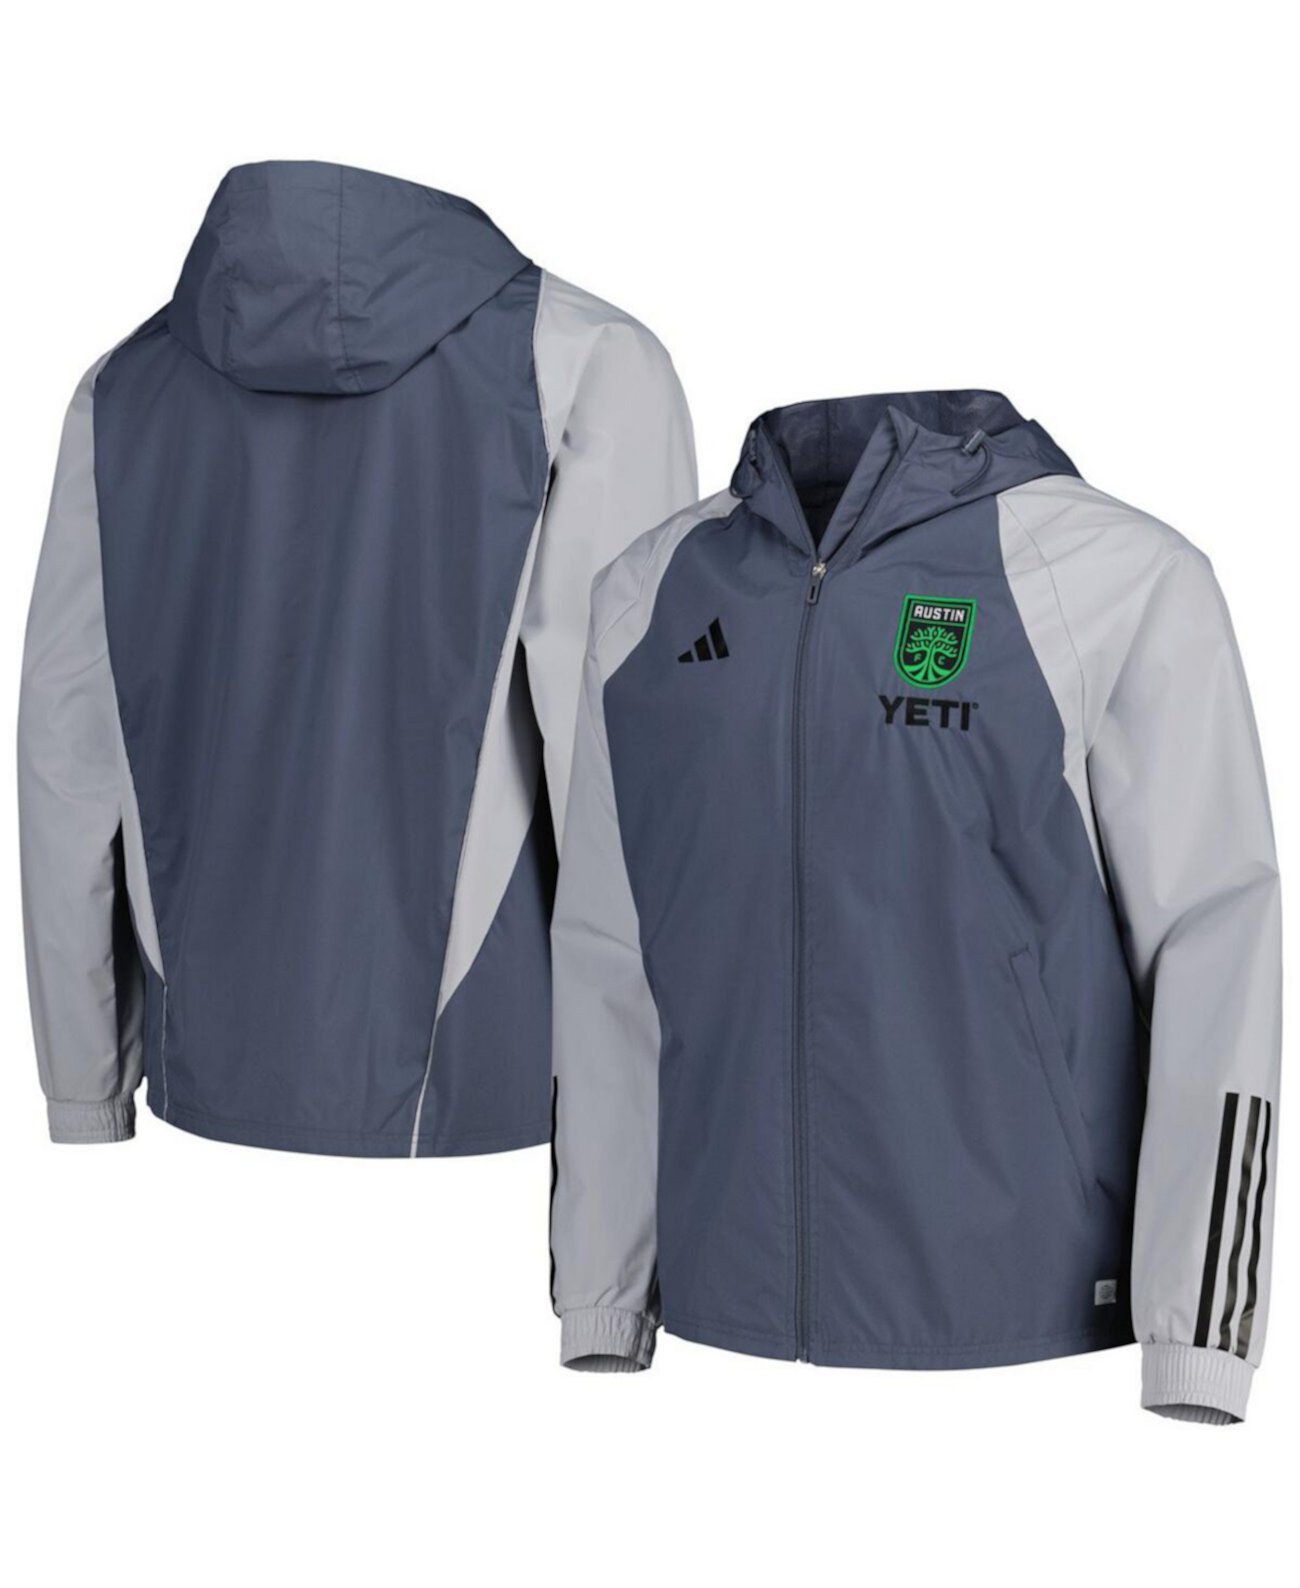 Мужская темно-серая всепогодная куртка Austin FC с капюшоном и регланами на молнии во всю длину Adidas